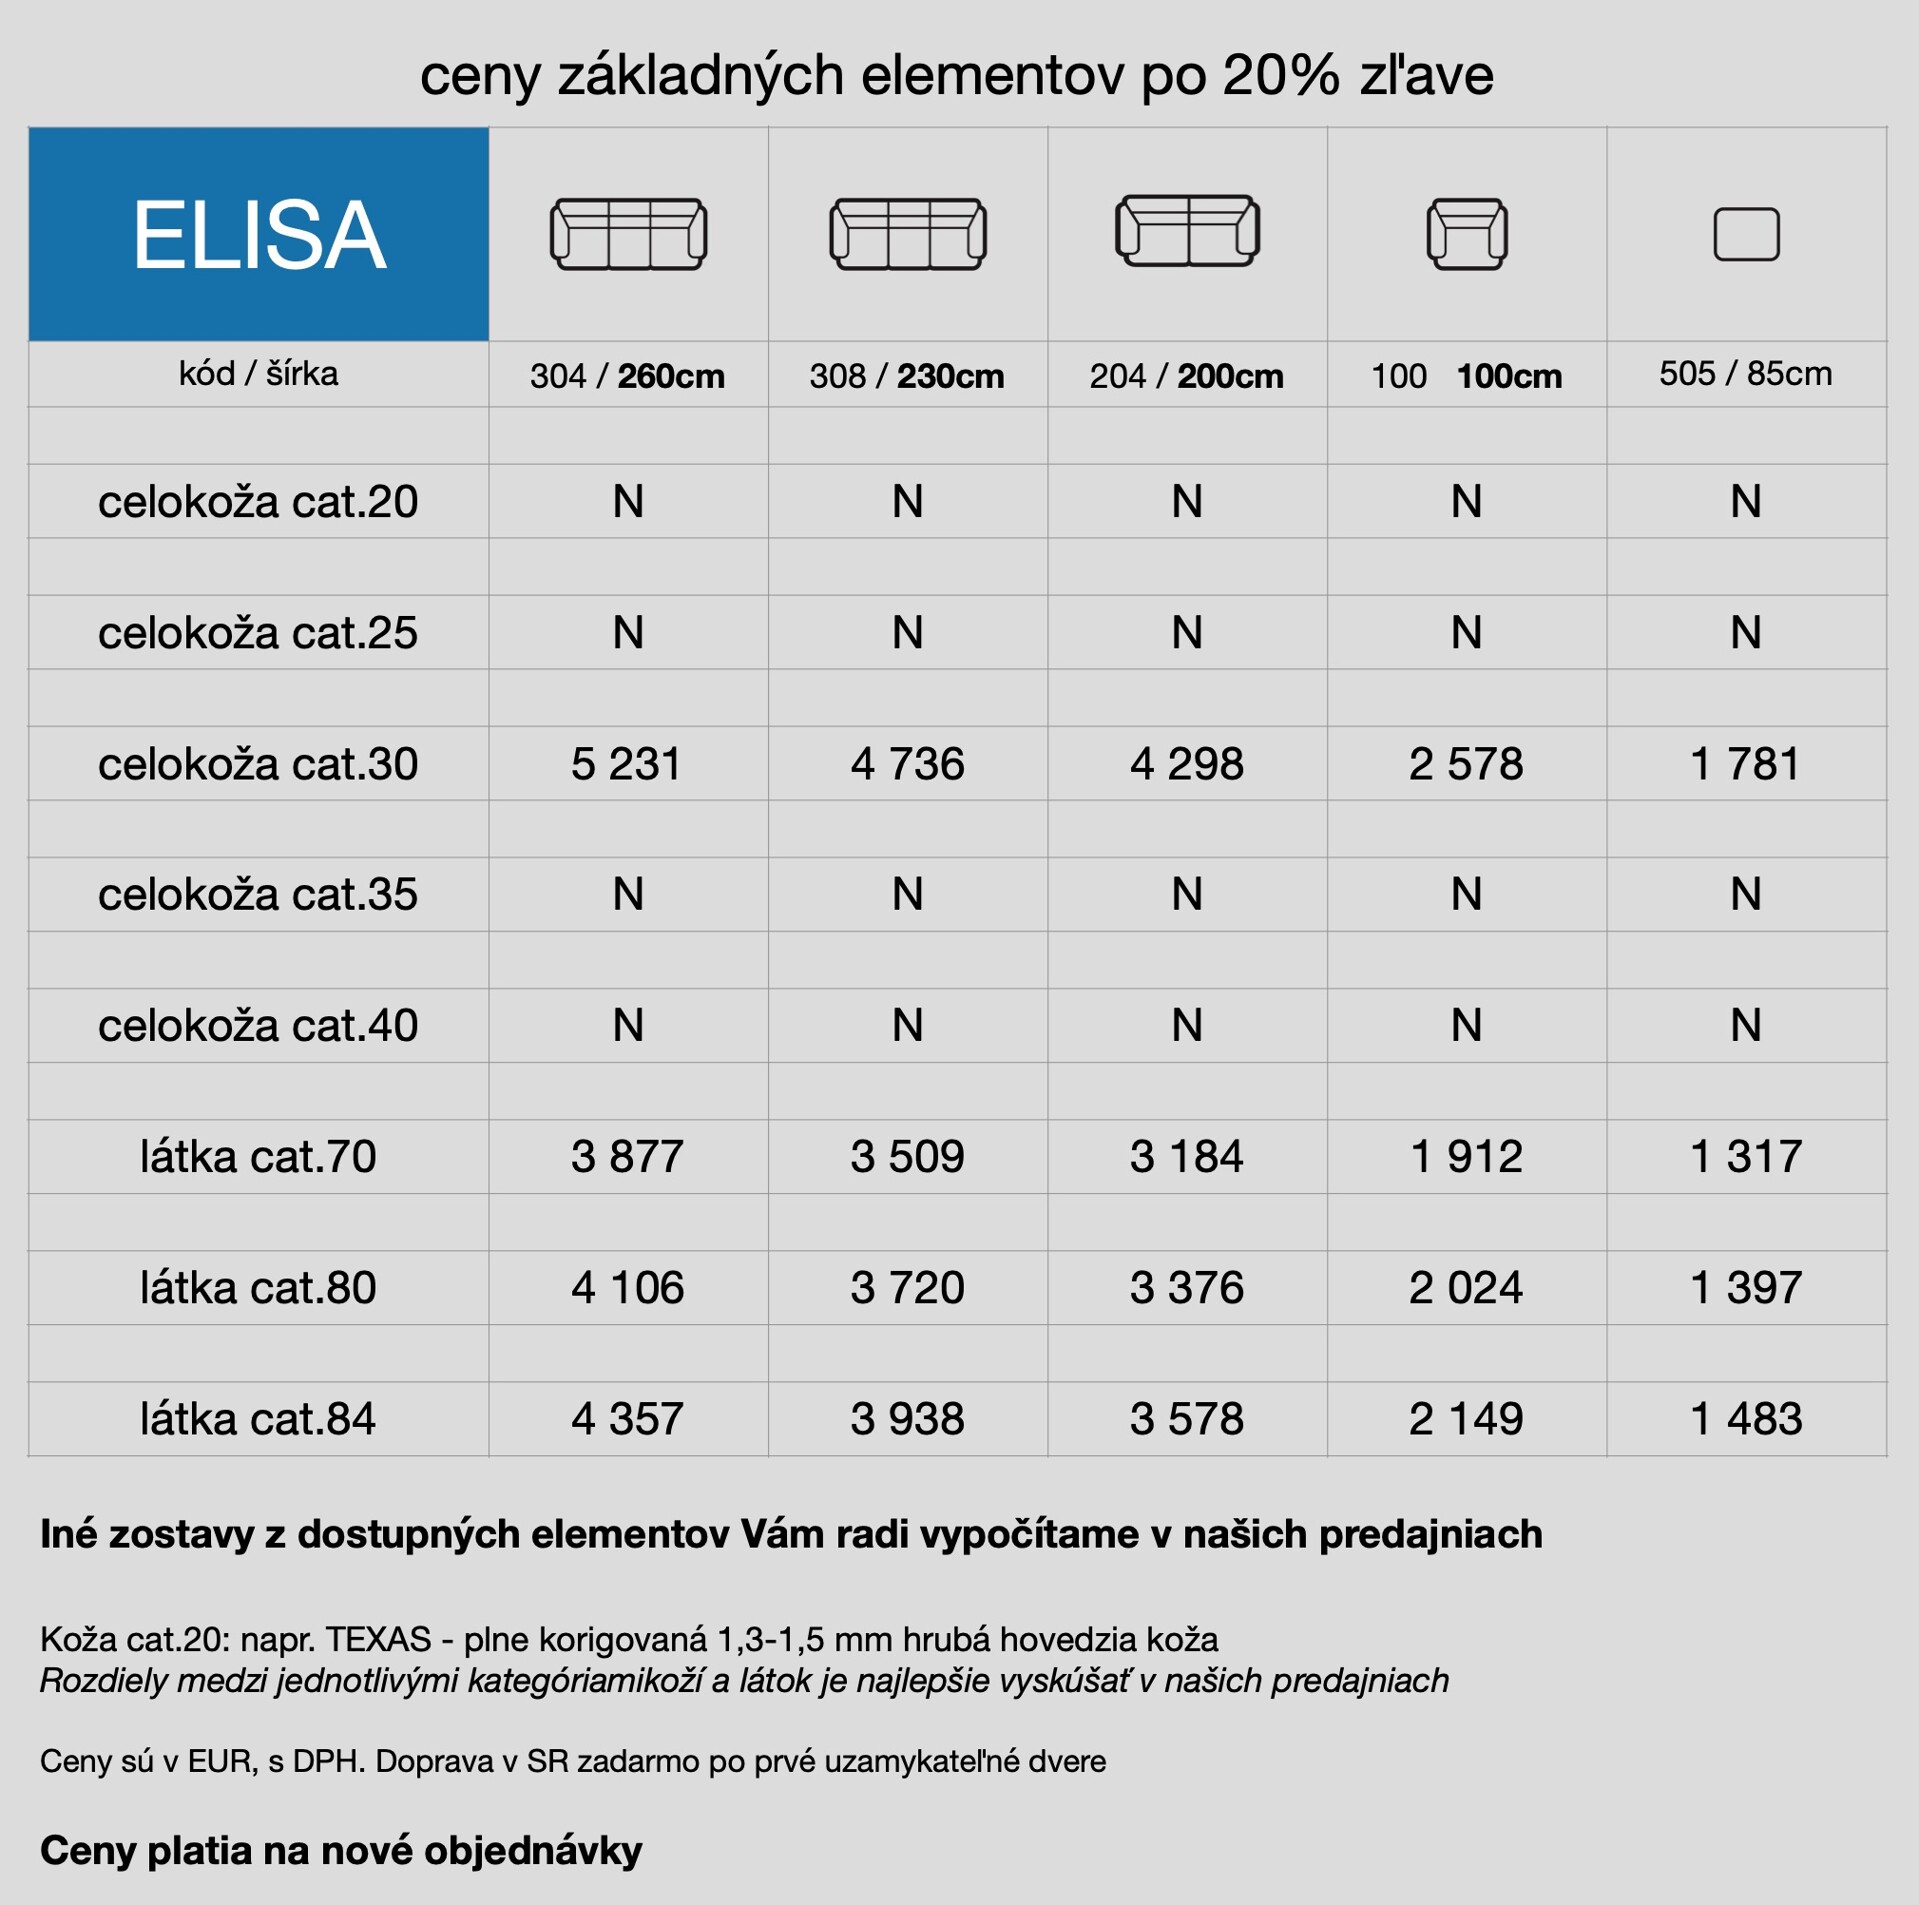 cennik sedačky ELISA